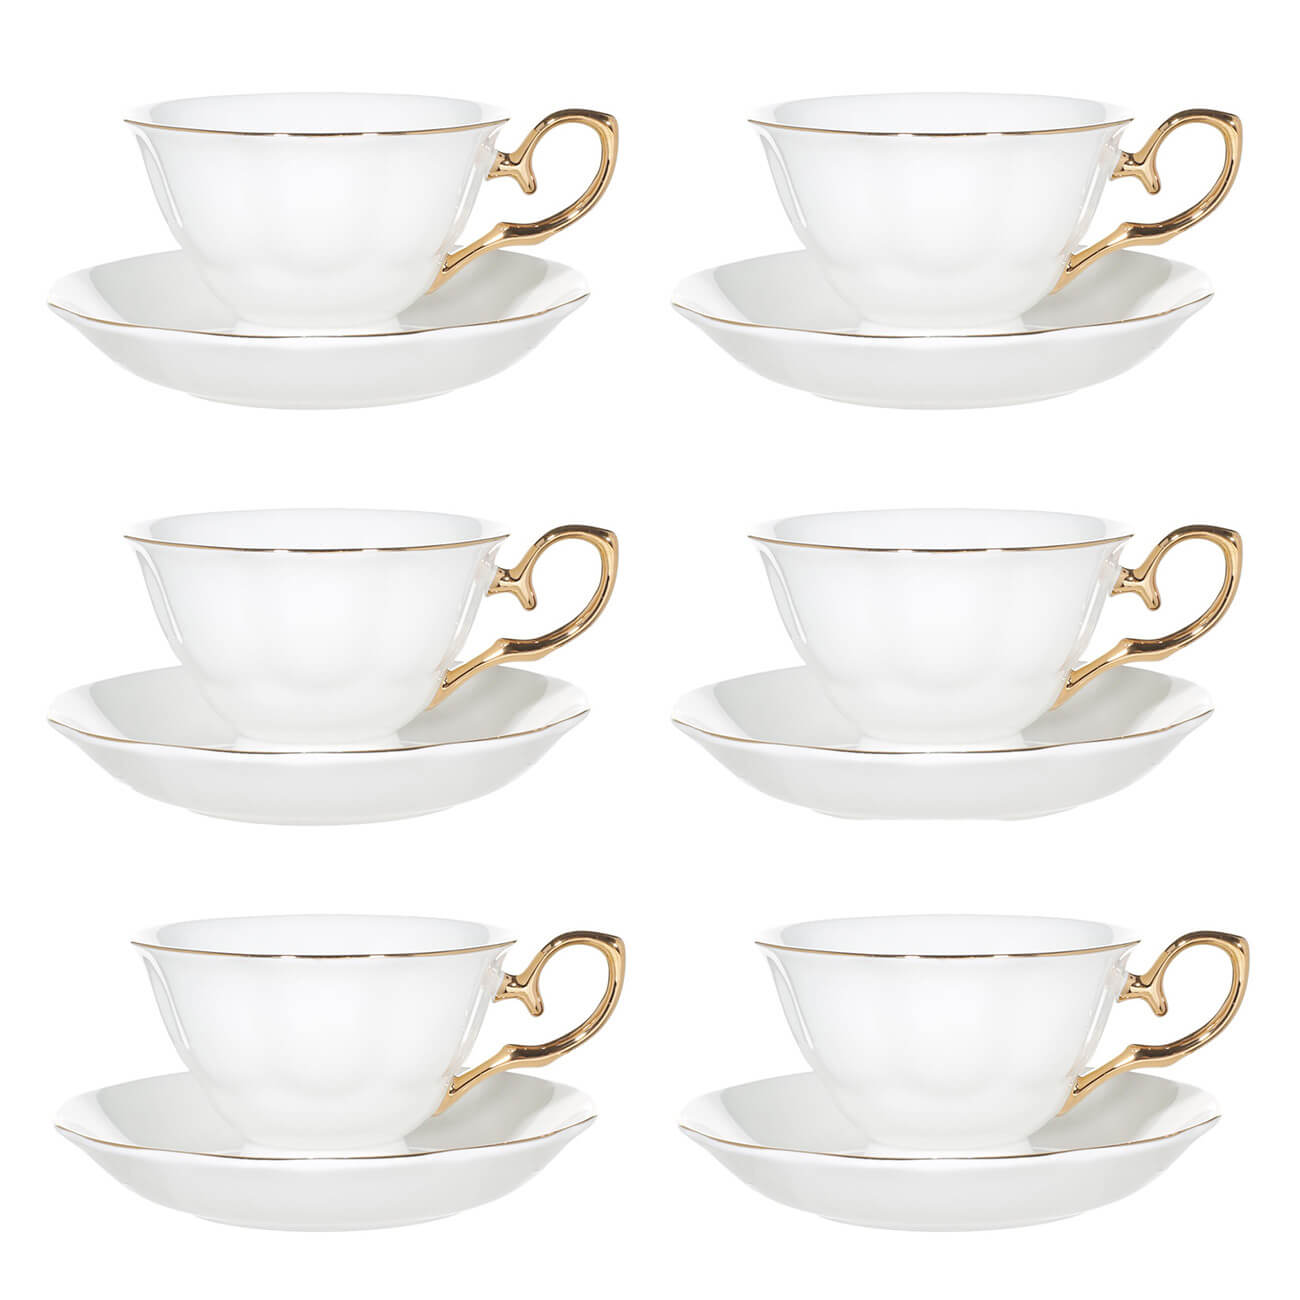 Пара чайная, 6 перс, 12 пр, 180 мл, фарфор F, бело-золотистая, Premium Gold ложка чайная с гравировкой